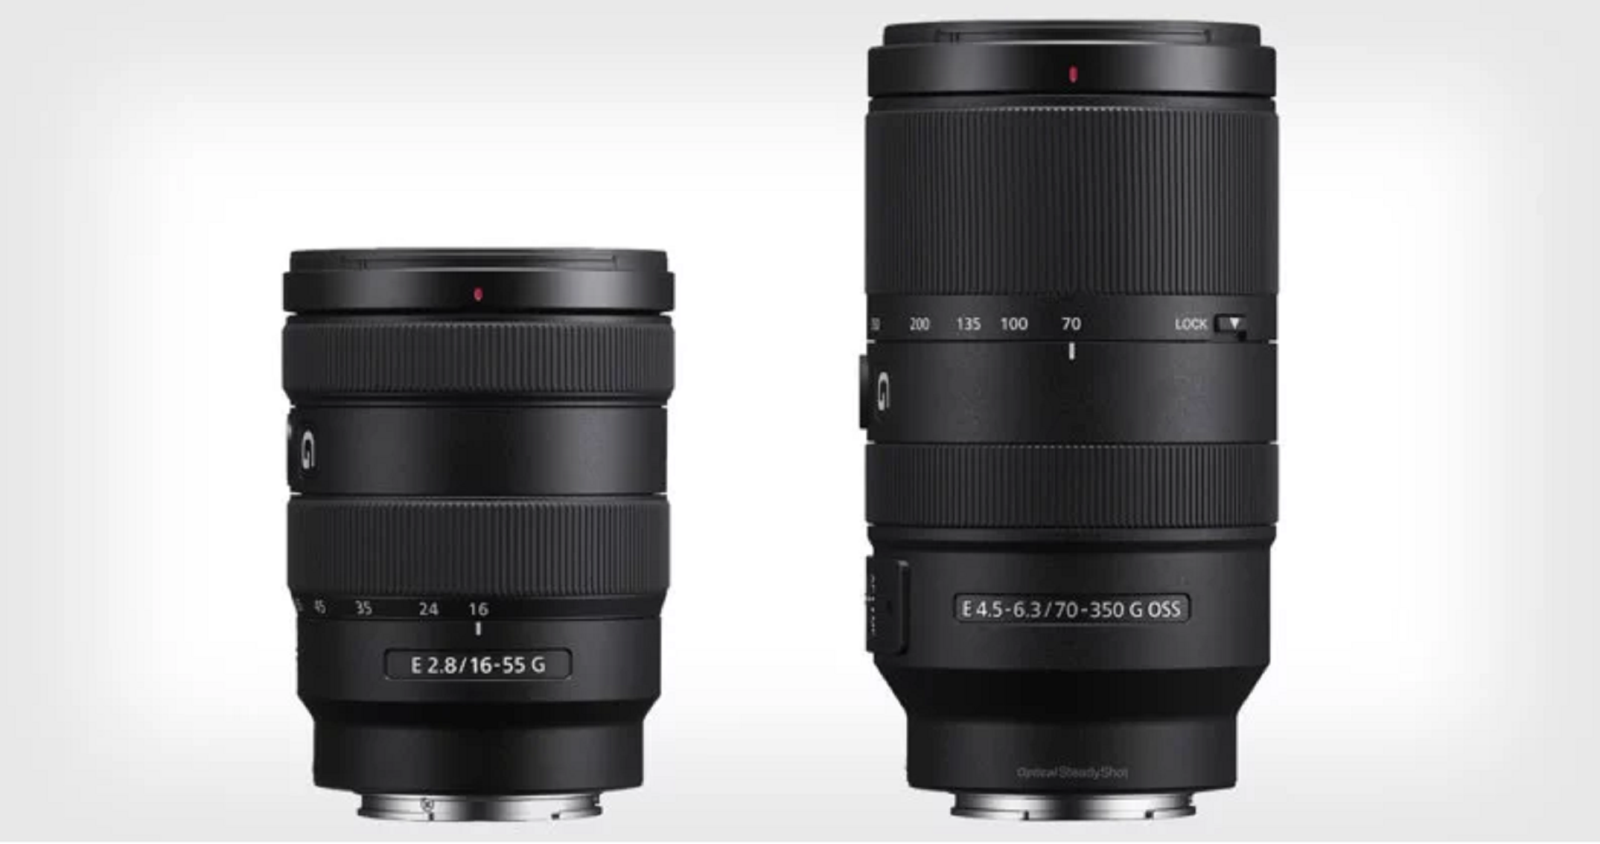 Sony công bố hai ống kính mới 16-55mm f/2.8 G và 70-350mm f/4.5-6.3 G ngàm E cho hệ máy APS-C